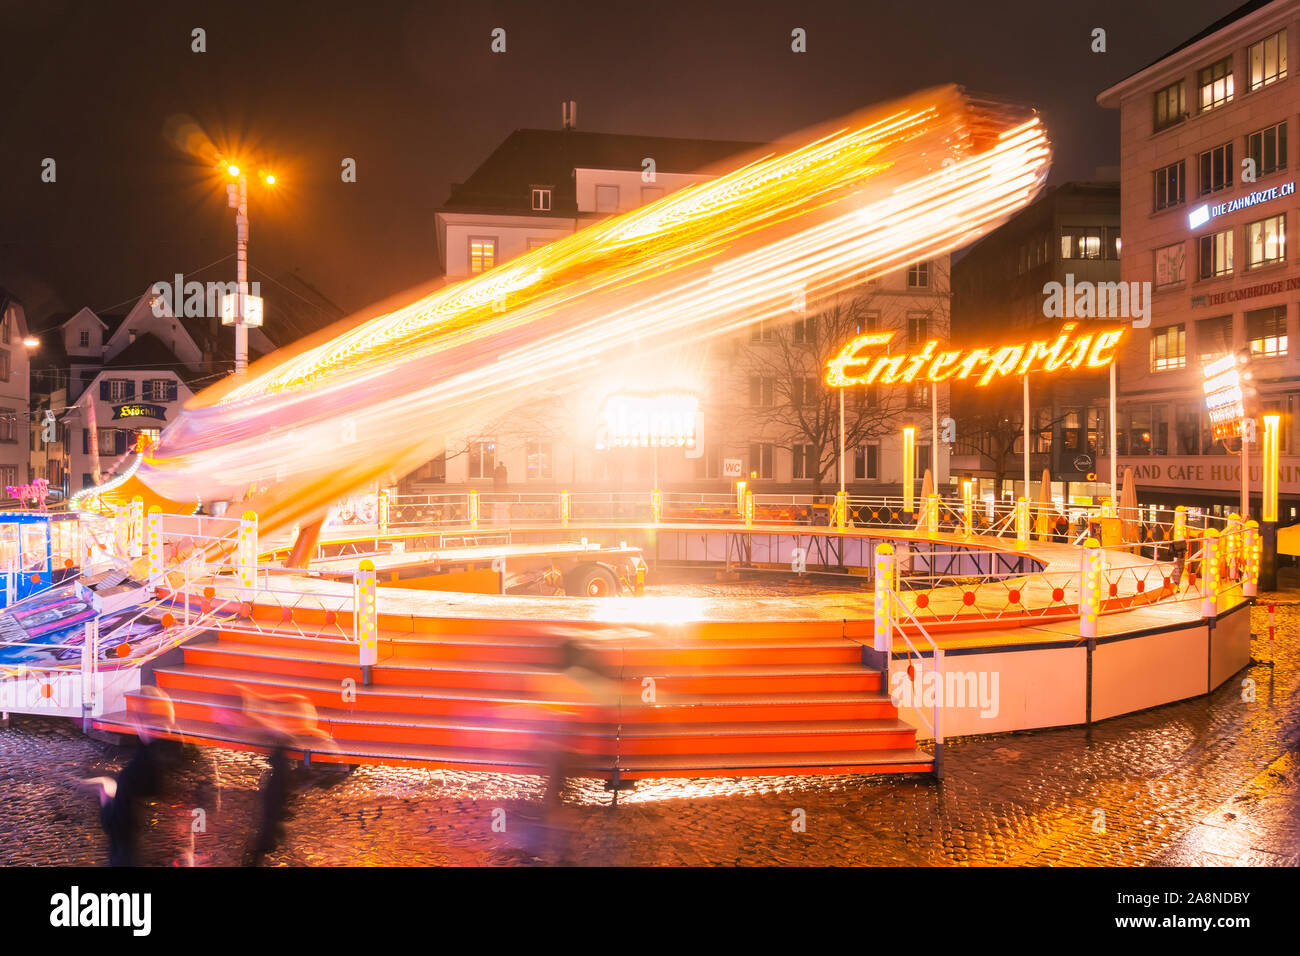 L'entreprise manège en mouvement avec le mouvement des roues très rapide, voyageant de nuit fête foraine Herbst Messe dans le centre-ville de Bâle, Suisse. Banque D'Images